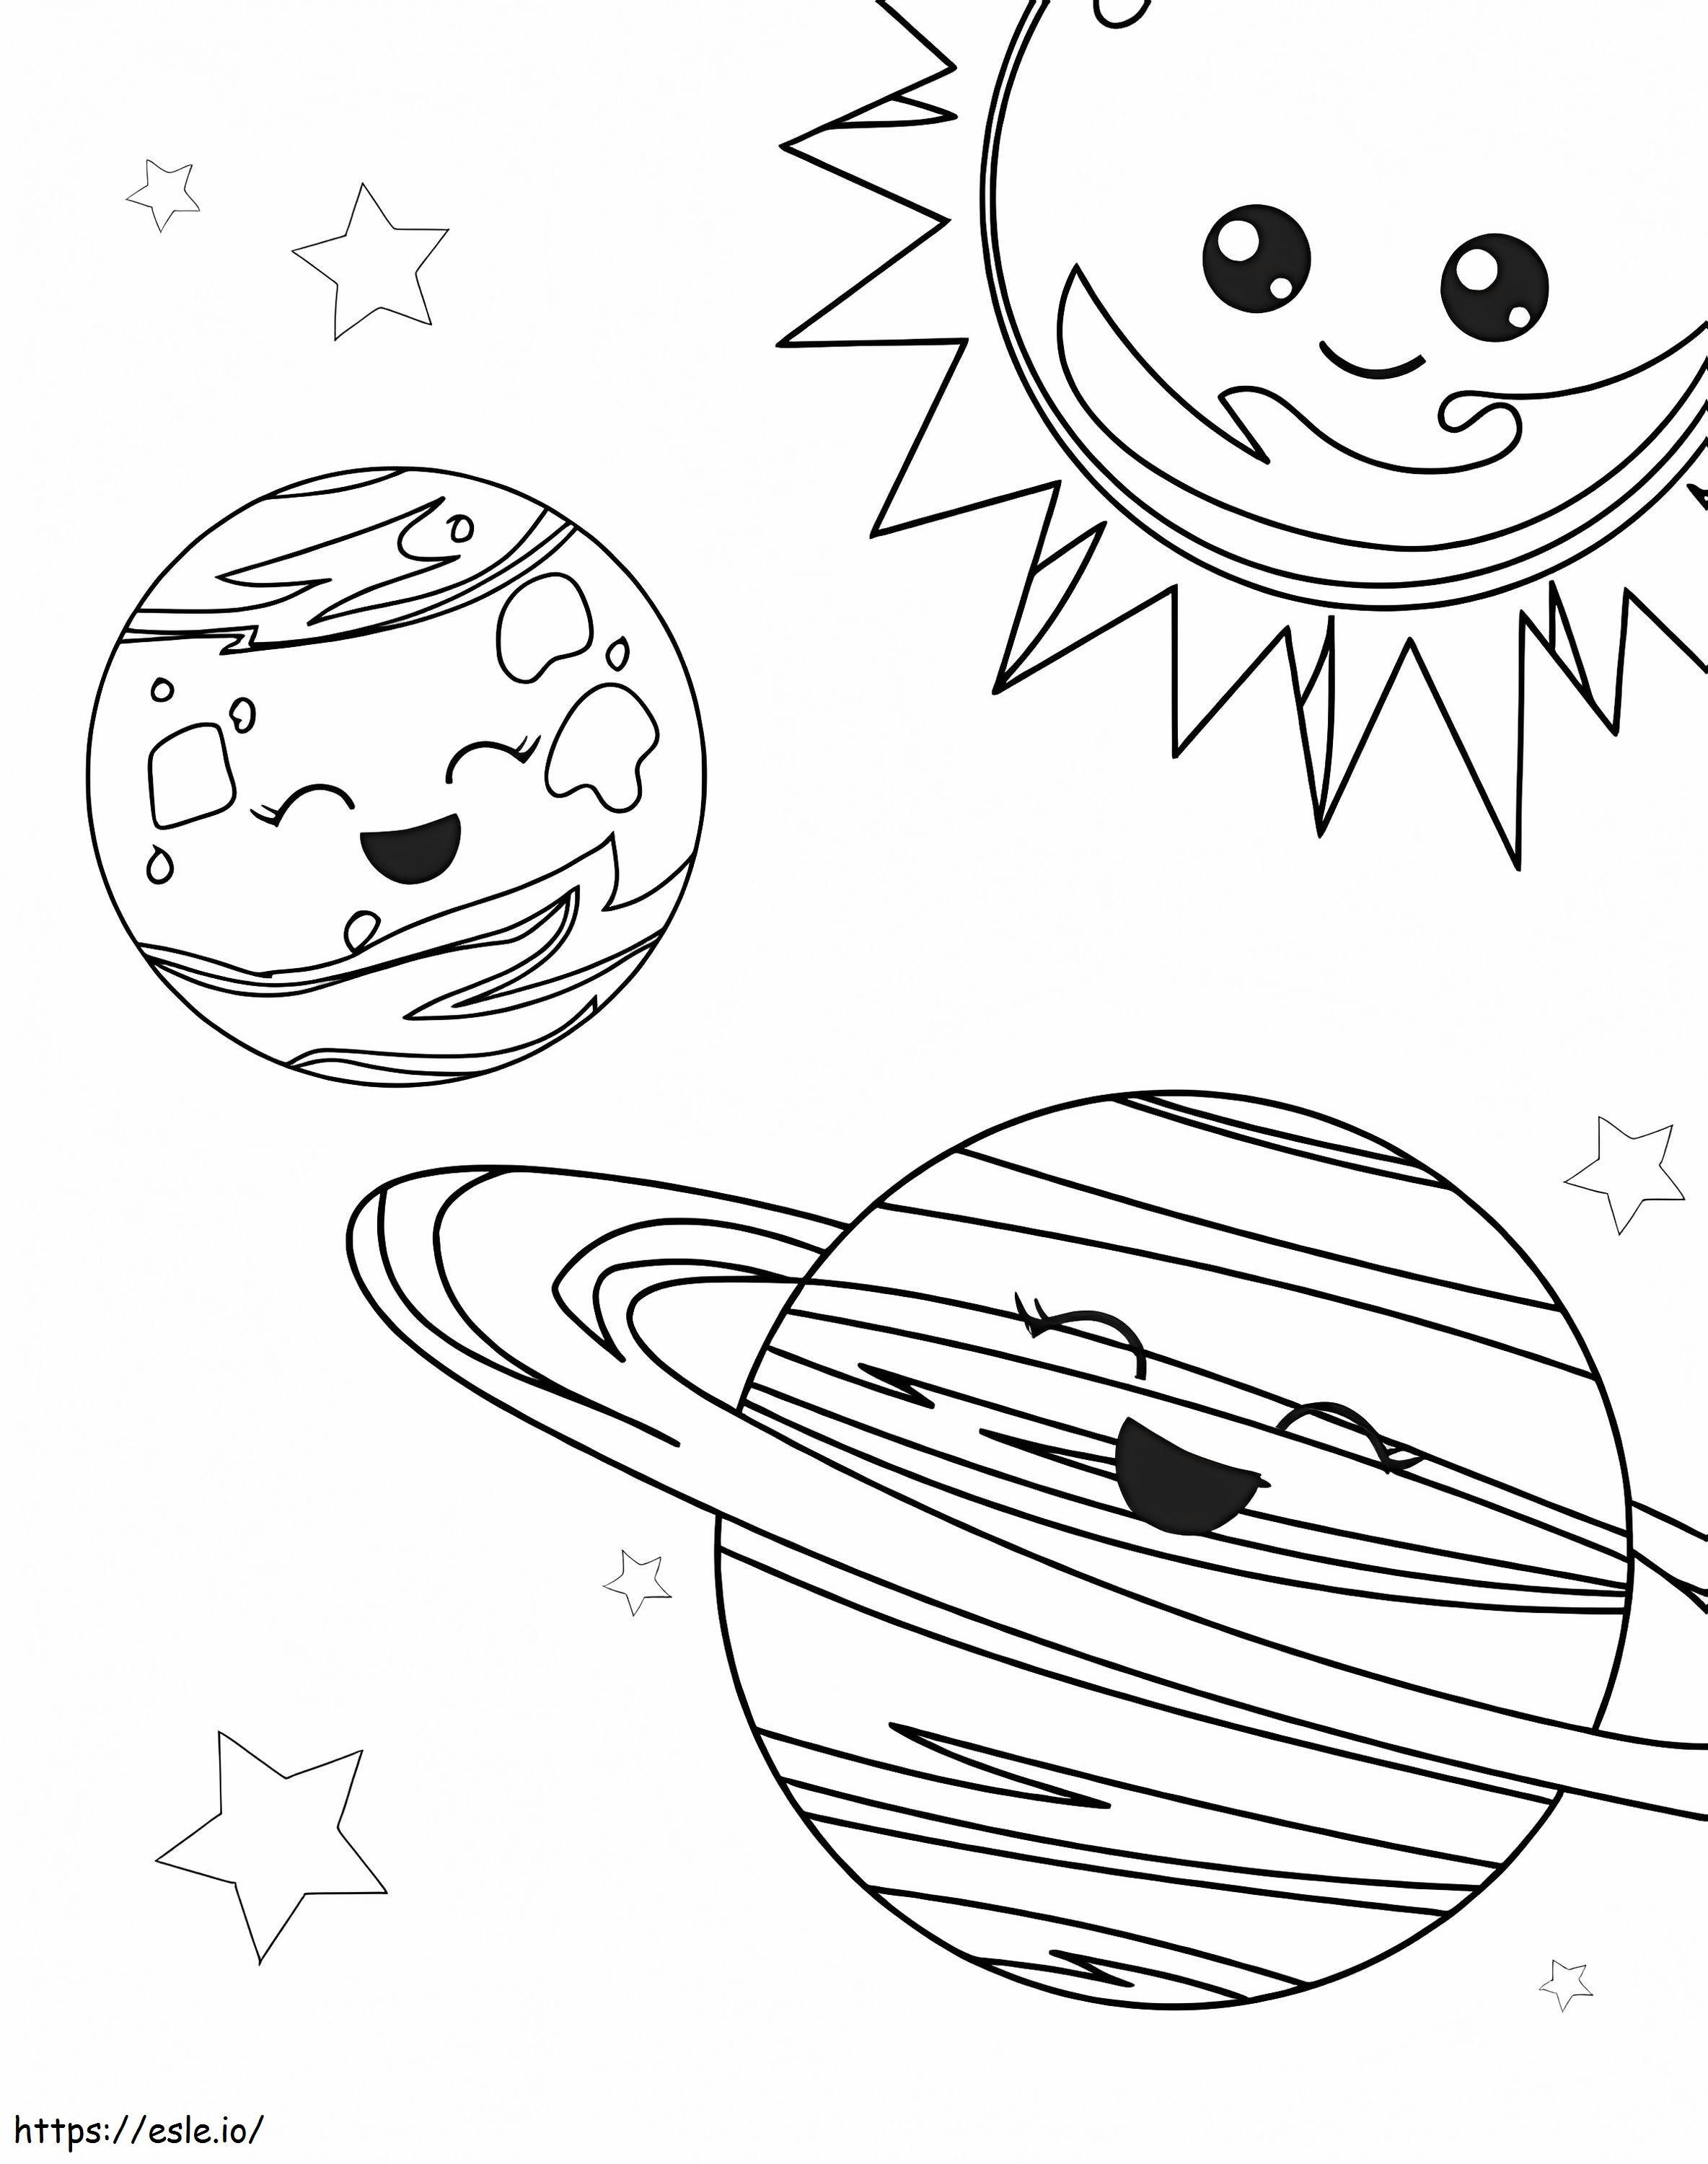 Três planetas divertidos no espaço para colorir